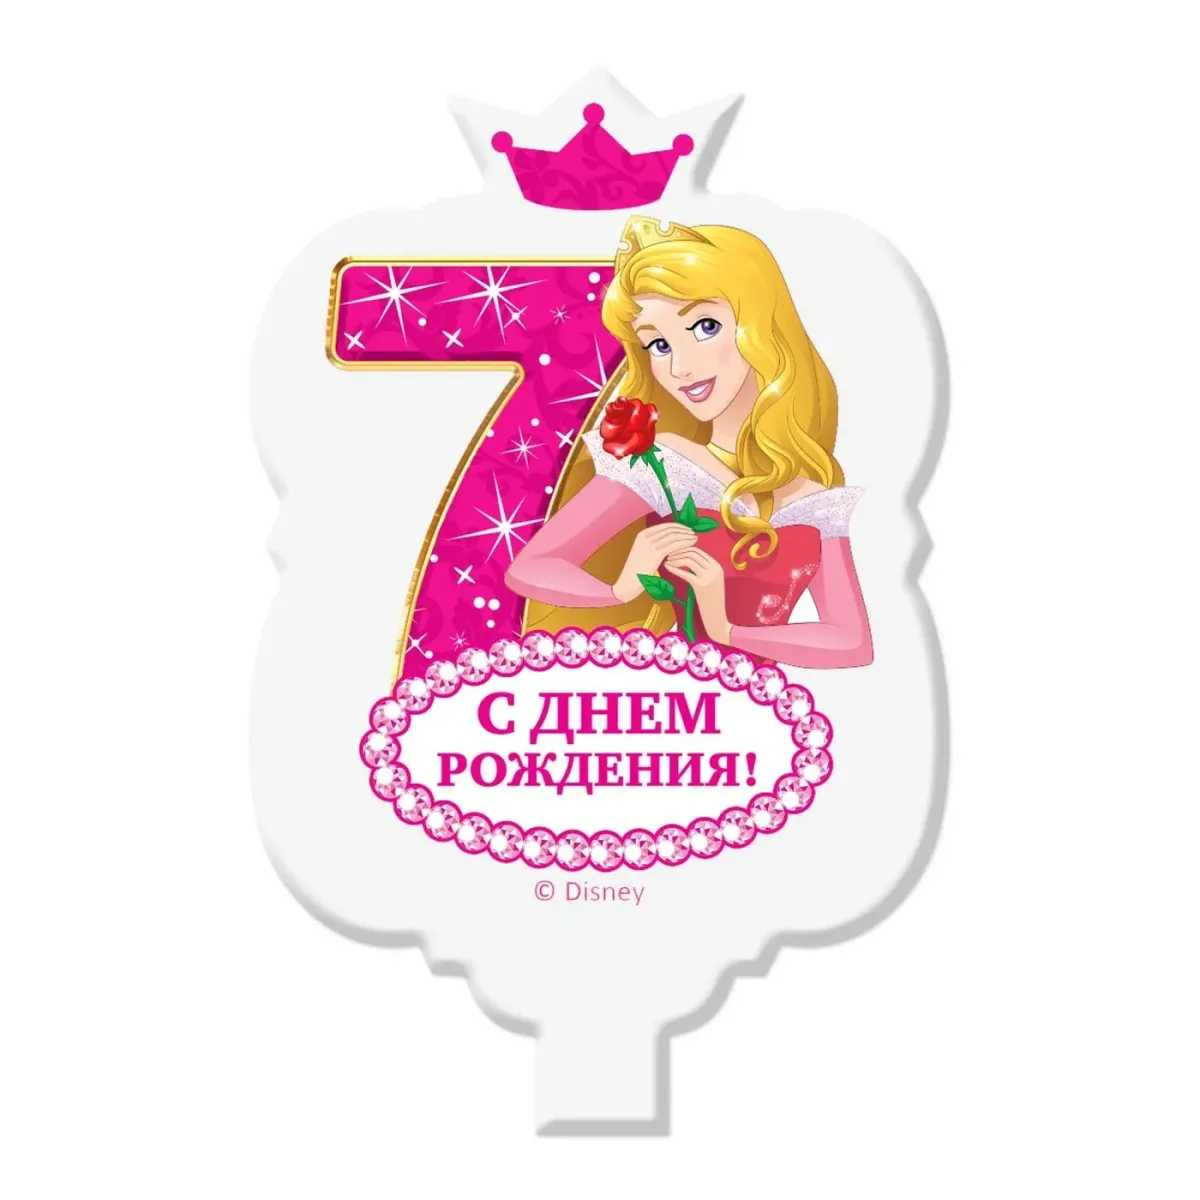 Поздравляю с днем рождения девочке 7. День рождения принцессы. 7 Лет девочке поздравления. Поздравляем принцессу с днем рождения. Открытка с днём рождения девочке 7 лет.